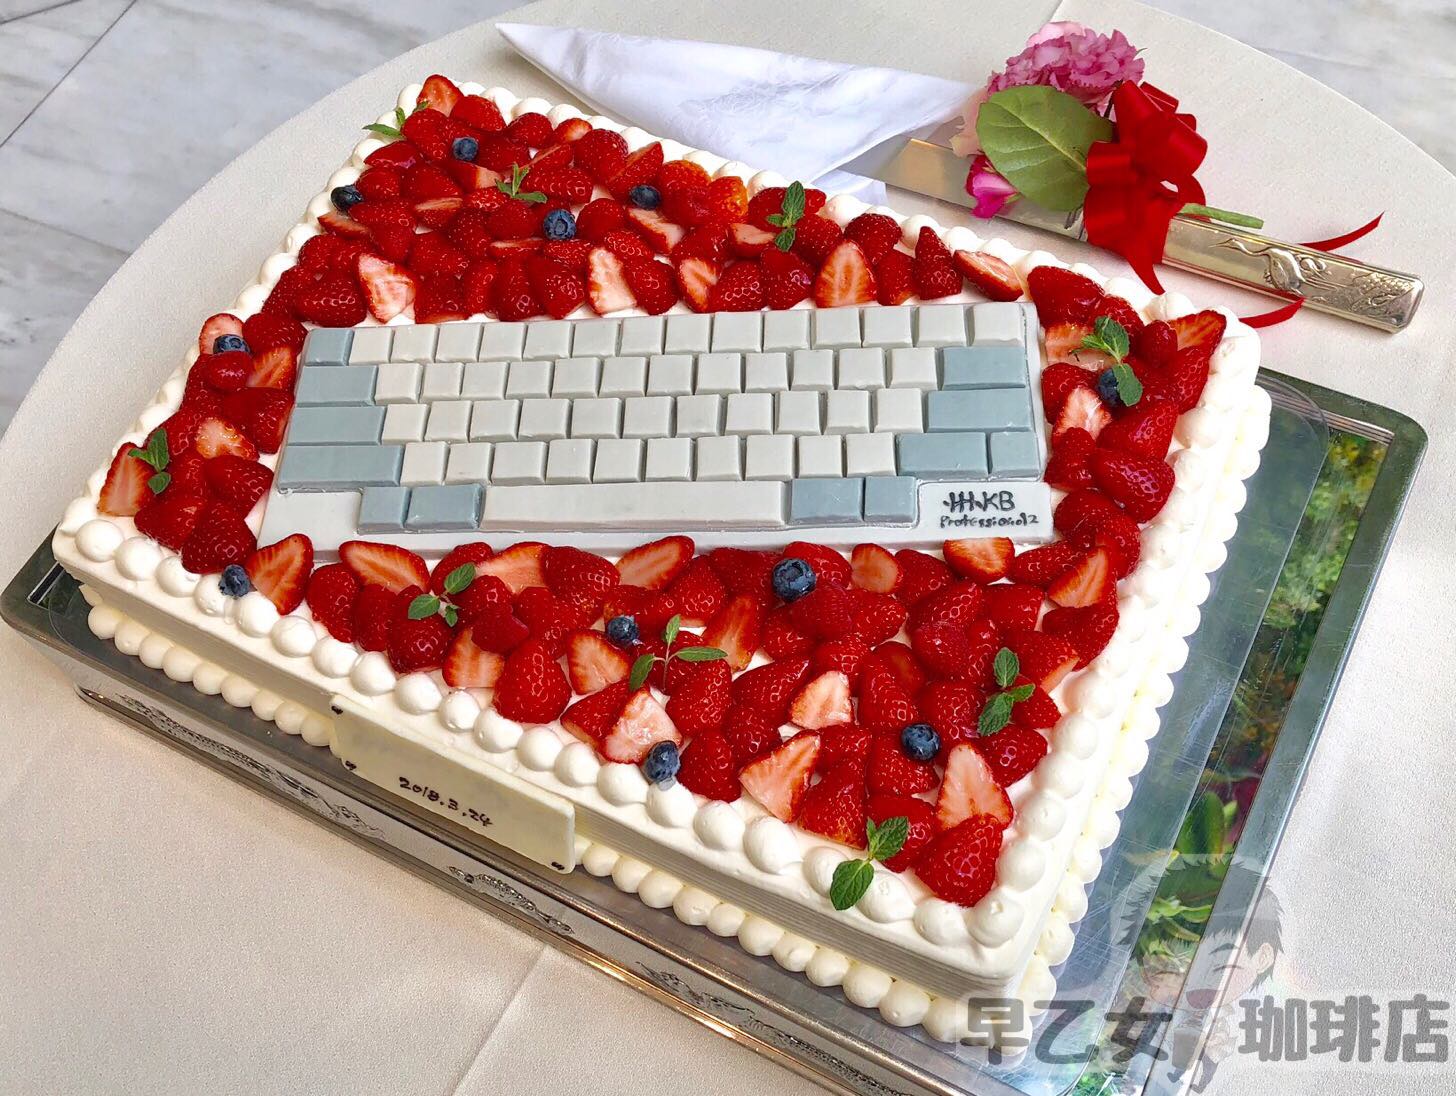 Happy Hacking Keyboard Professional2 無刻印白をモチーフにしたウェディングケーキができるまでの話 さおとめらいふ